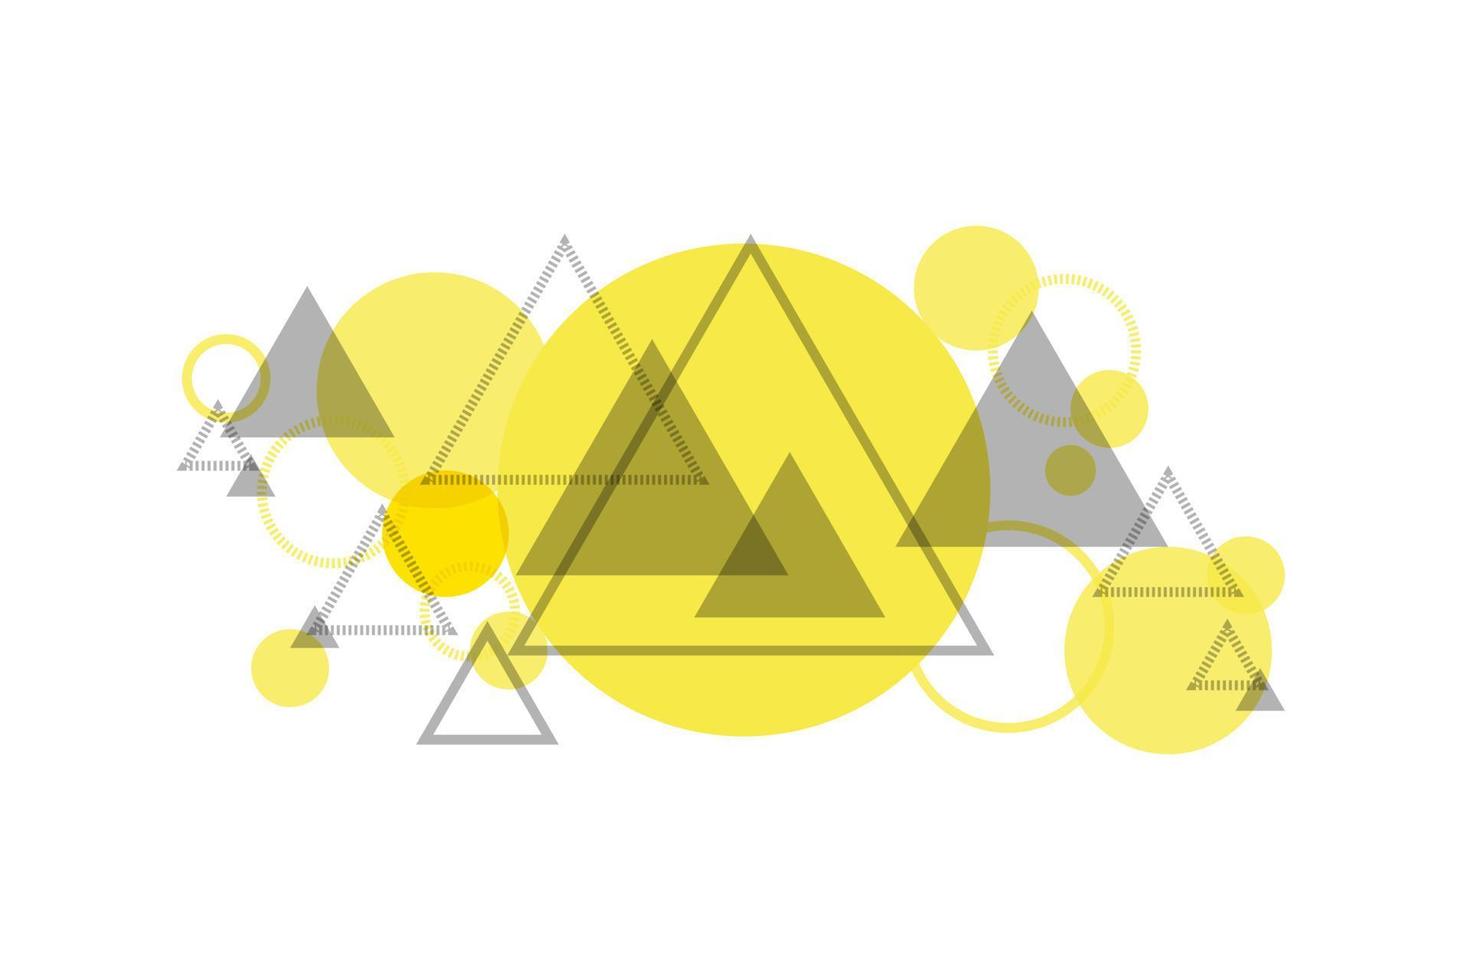 gelber und grauer Dreieck- und Kreiszusammenfassungshintergrund. Webdesign, Banner oder Hintergrund. vektor